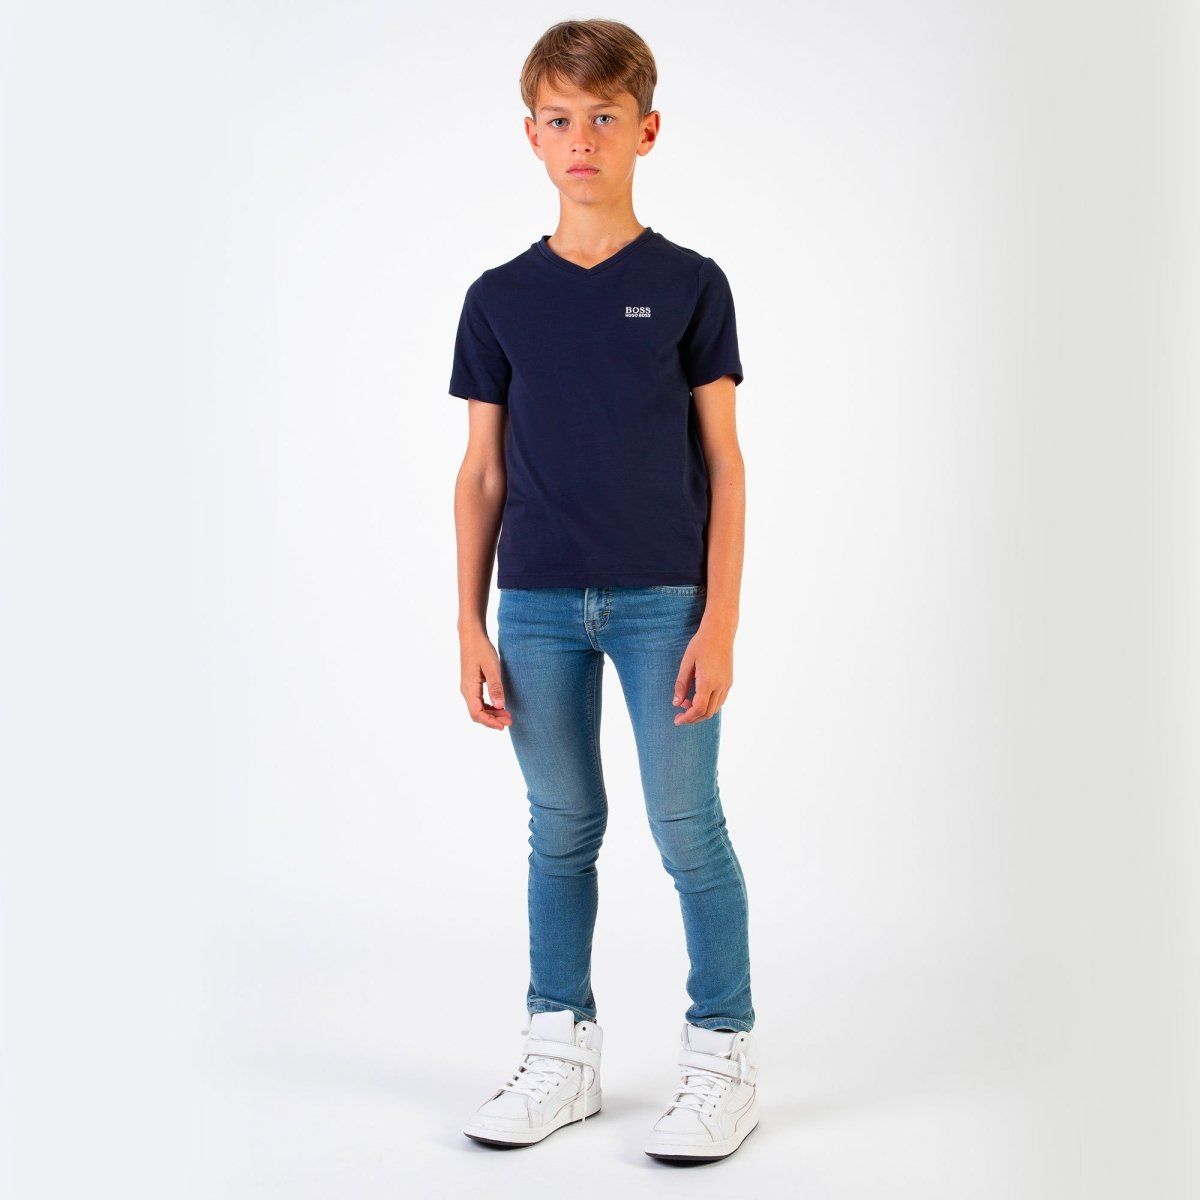 Hugo Boss Boys Basic Short Sleeves V Neck T-Shirt T-Shirts Hugo Boss 